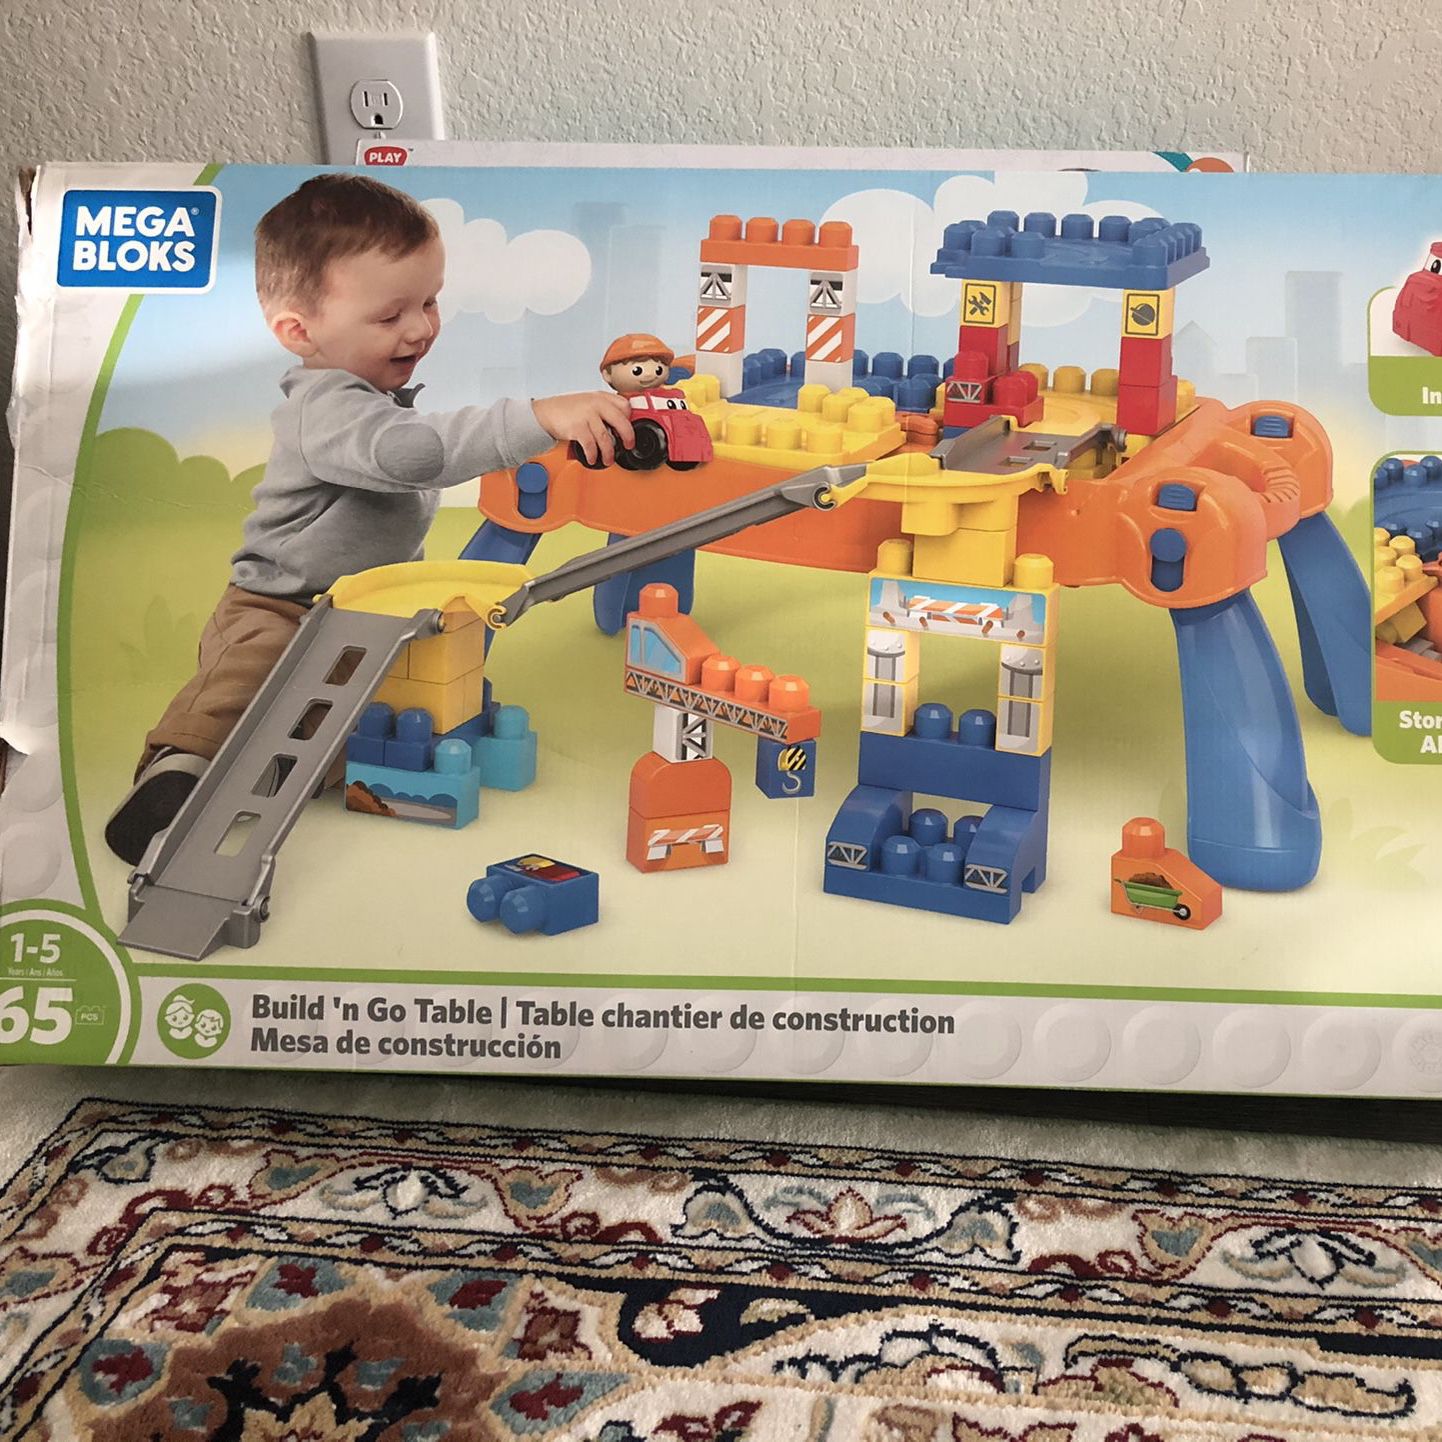 Build’n Go Table Building Blocks / Kids Blocks/ Toy